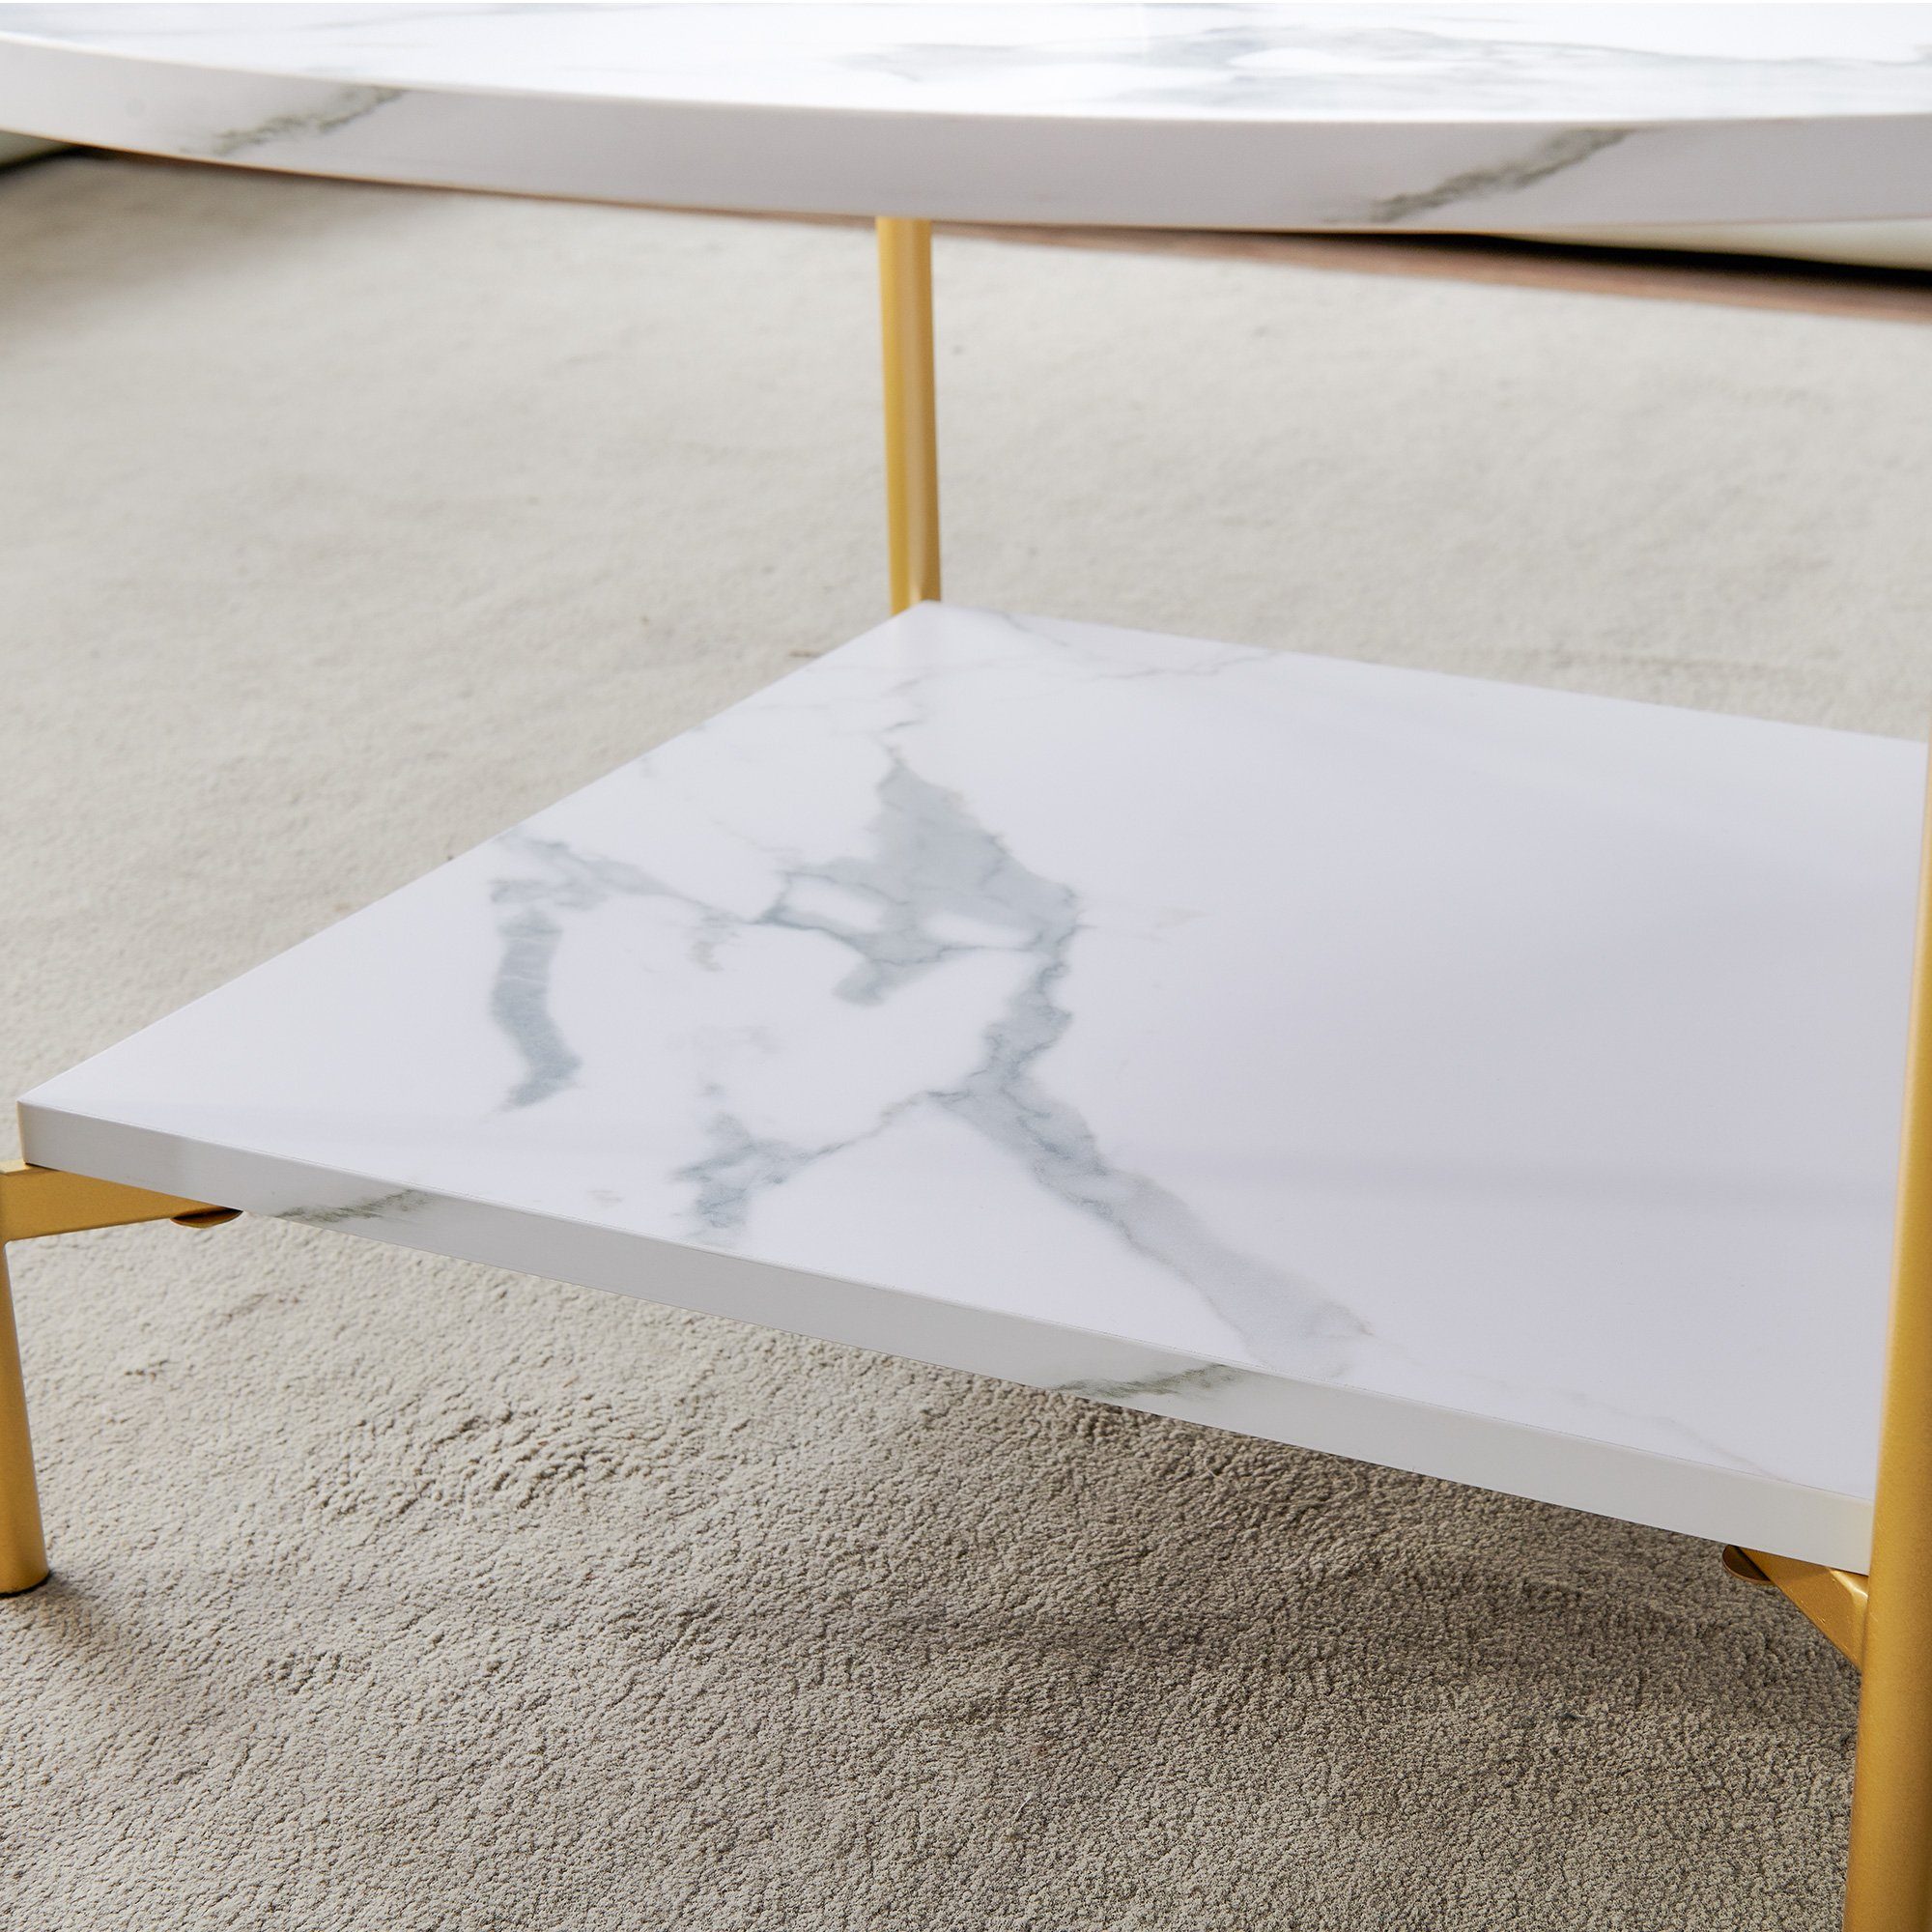 Sofatisch WISHDOR Beistelltisch mit Einfach marmorfarbener Stauraum zu Couchtisch montieren Couchtisch Schreibtisch (Gold), Platte mit Teetisch